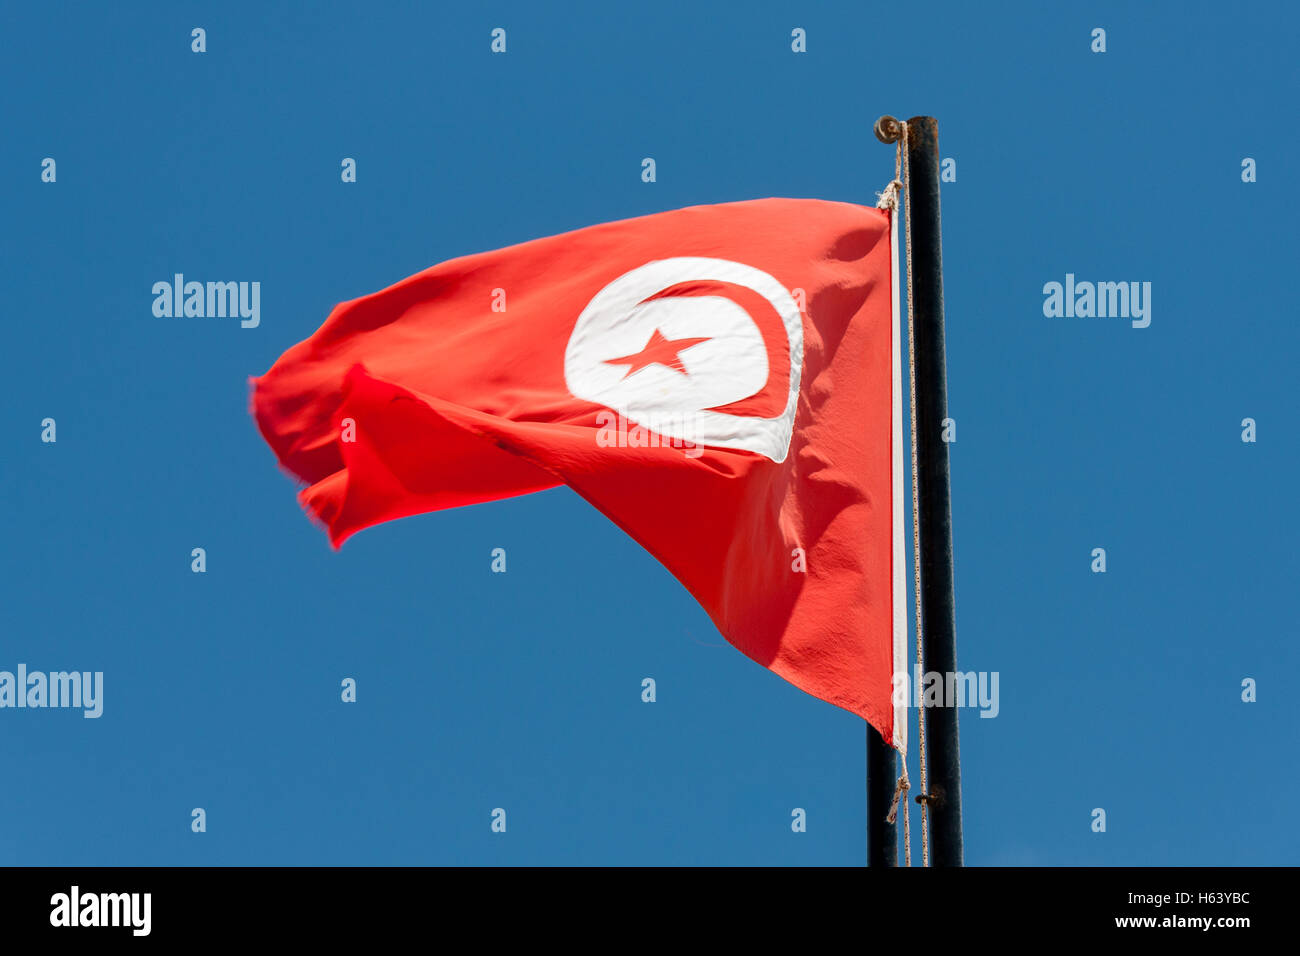 Tunisian flag against a blue sky Stock Photo